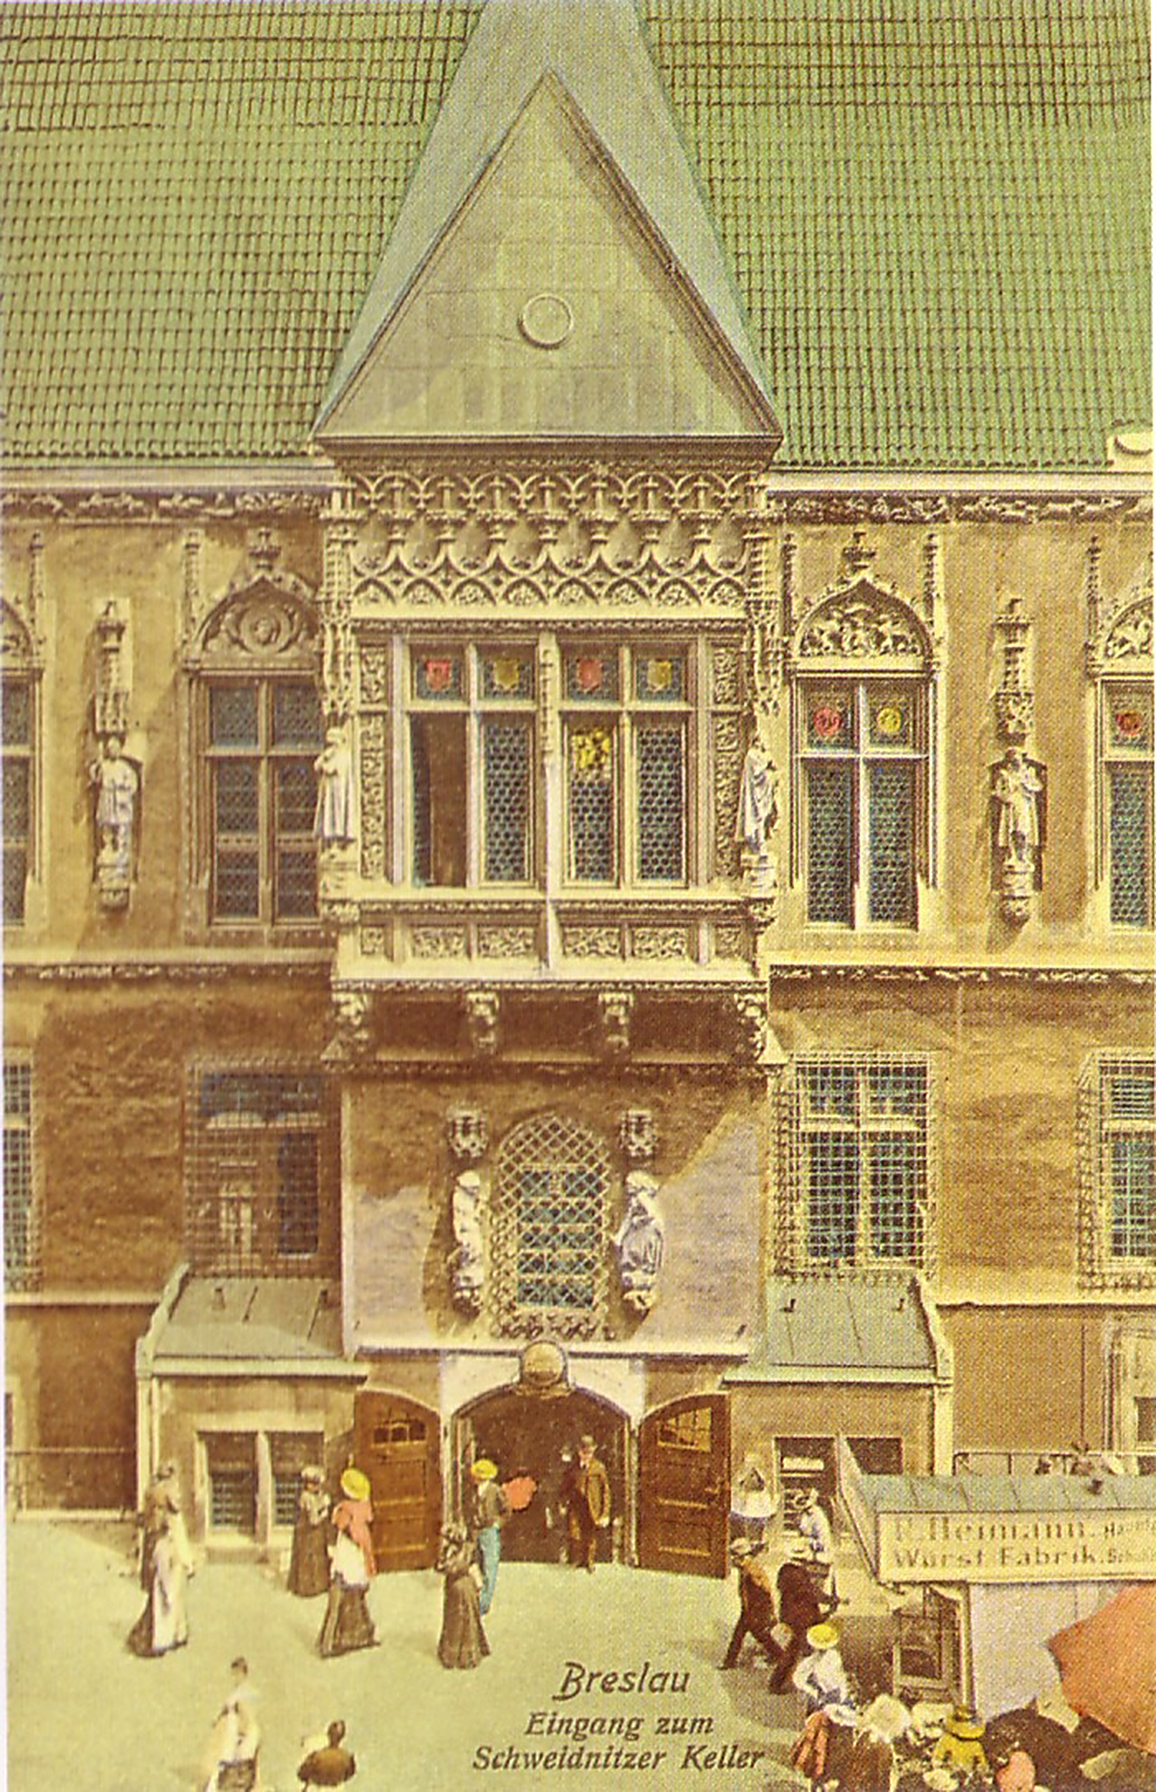 Piwnica Świdnicka we Wrocławiu na pocztówce pochodzącej prawdopodobnie z 1908 r